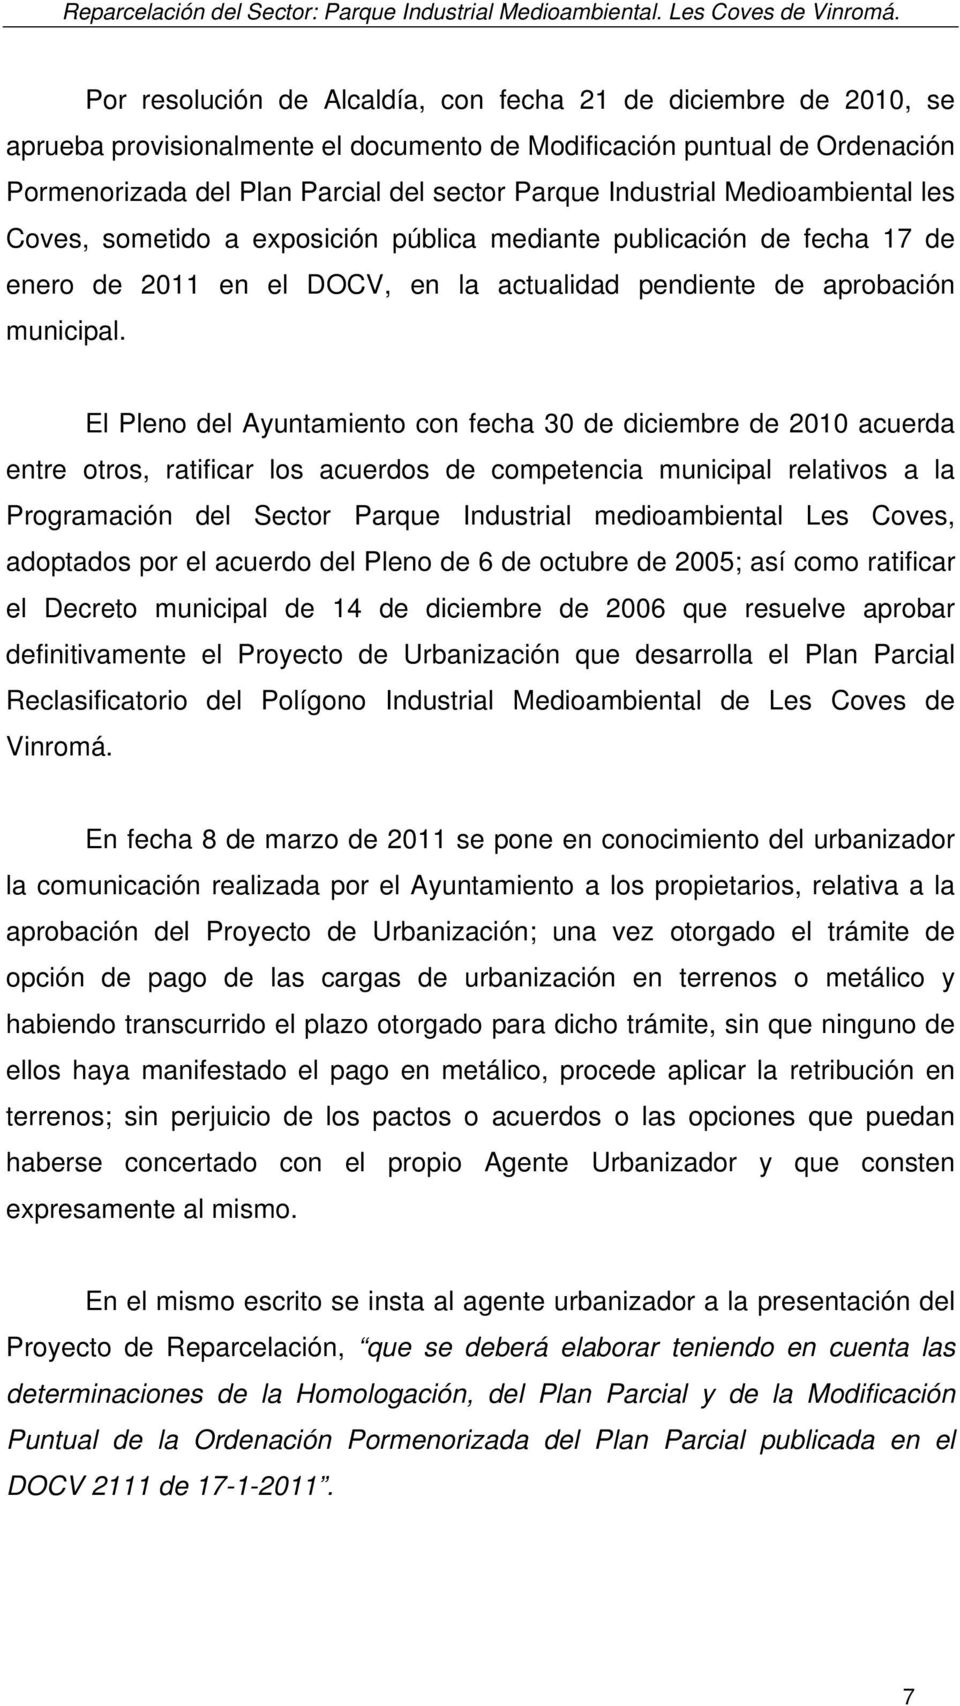 Industrial Medioambiental les Coves, sometido a exposición pública mediante publicación de fecha 17 de enero de 2011 en el DOCV, en la actualidad pendiente de aprobación municipal.